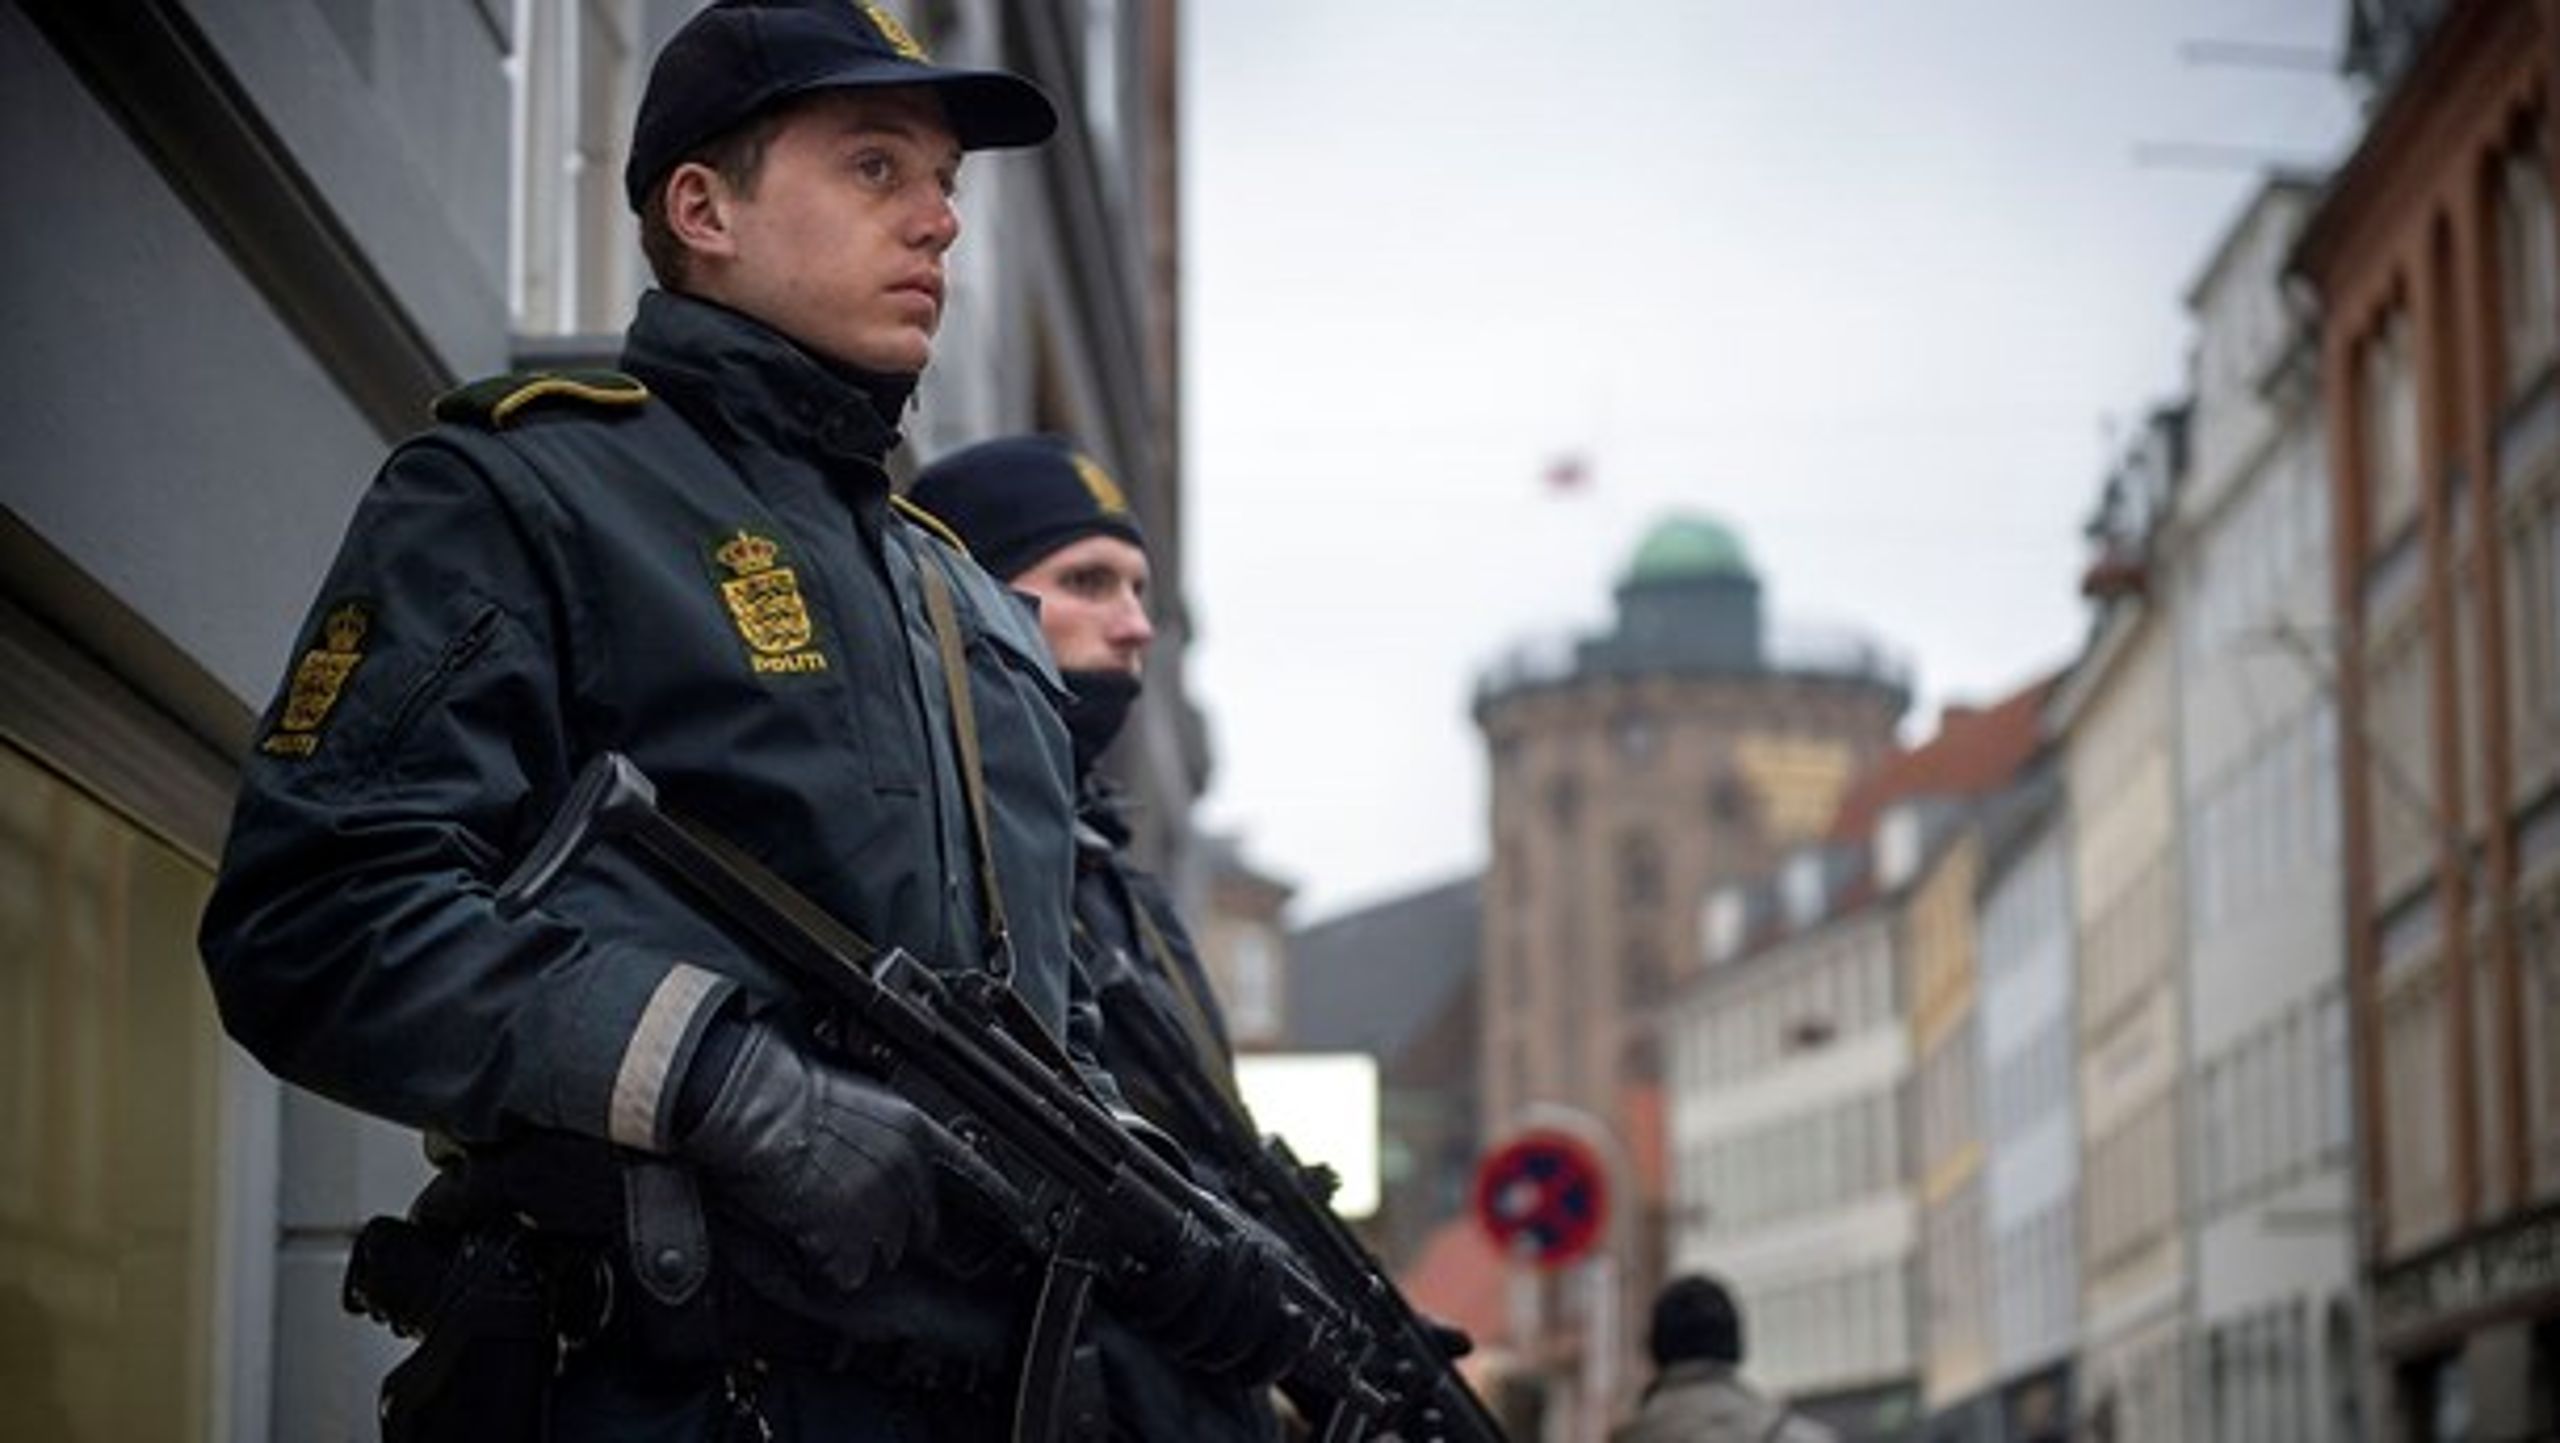 Fra 1. maj 2017 overgår Europol til at være et overstatsligt samarbejde, der blandt skal have øget fokus på bekæmpelse af terror på tværs af EU. Her ses politibetjente uden for den jødiske synagoge på Krystalgade i København.&nbsp;